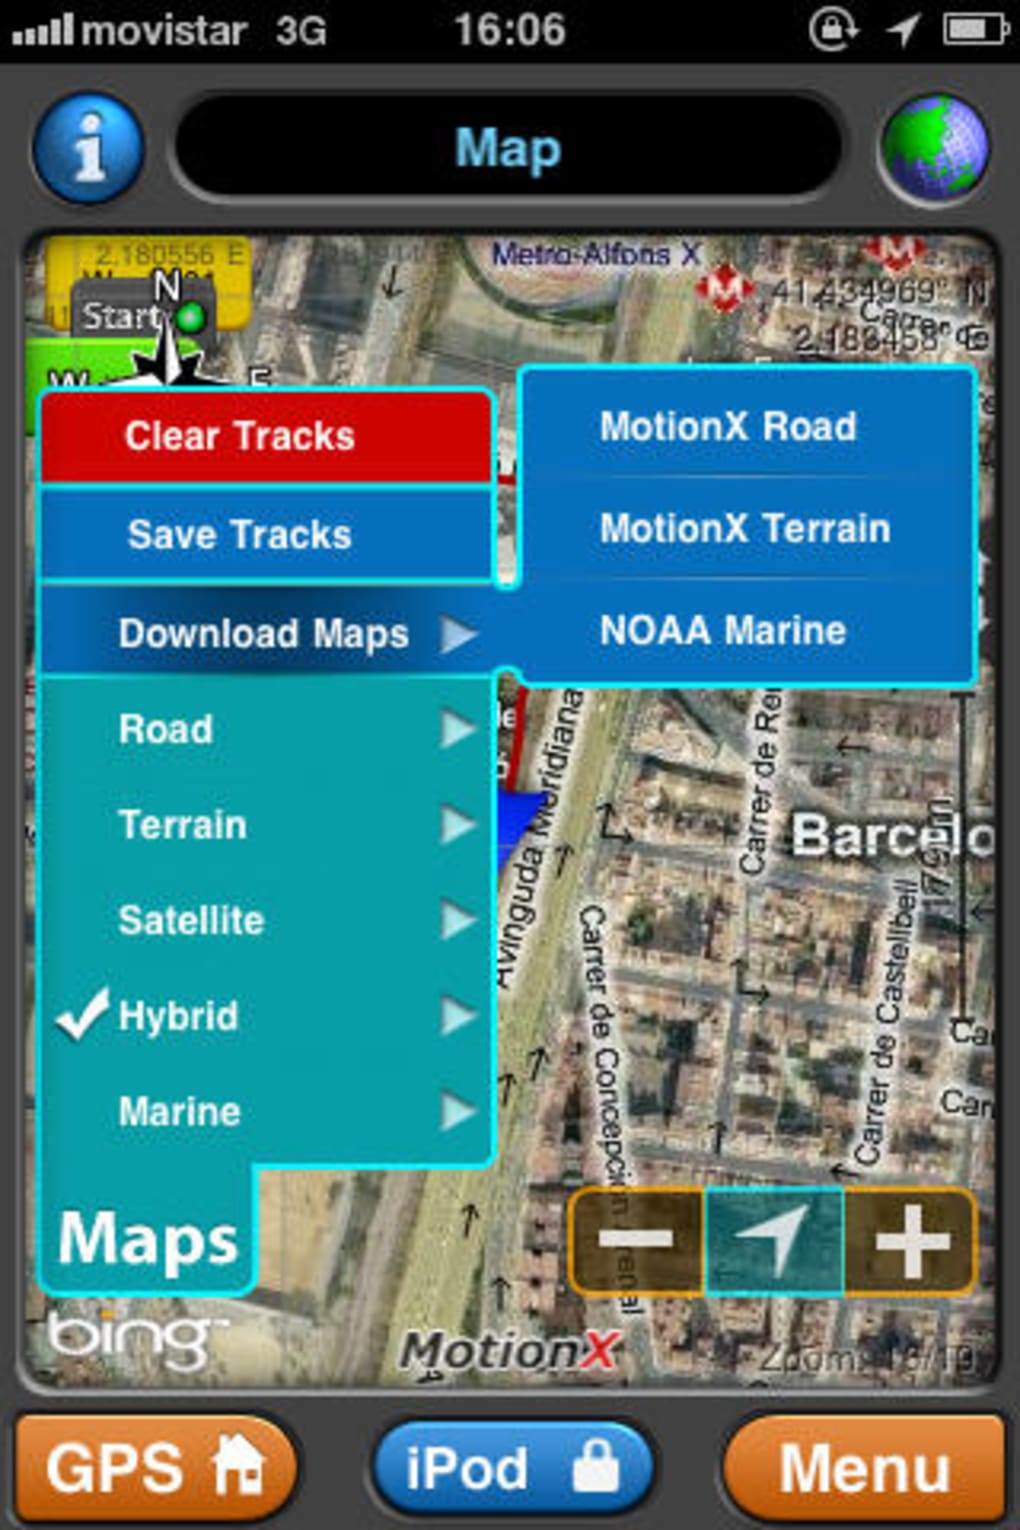 Taktil sans logo gave MotionX GPS for iPhone - Download